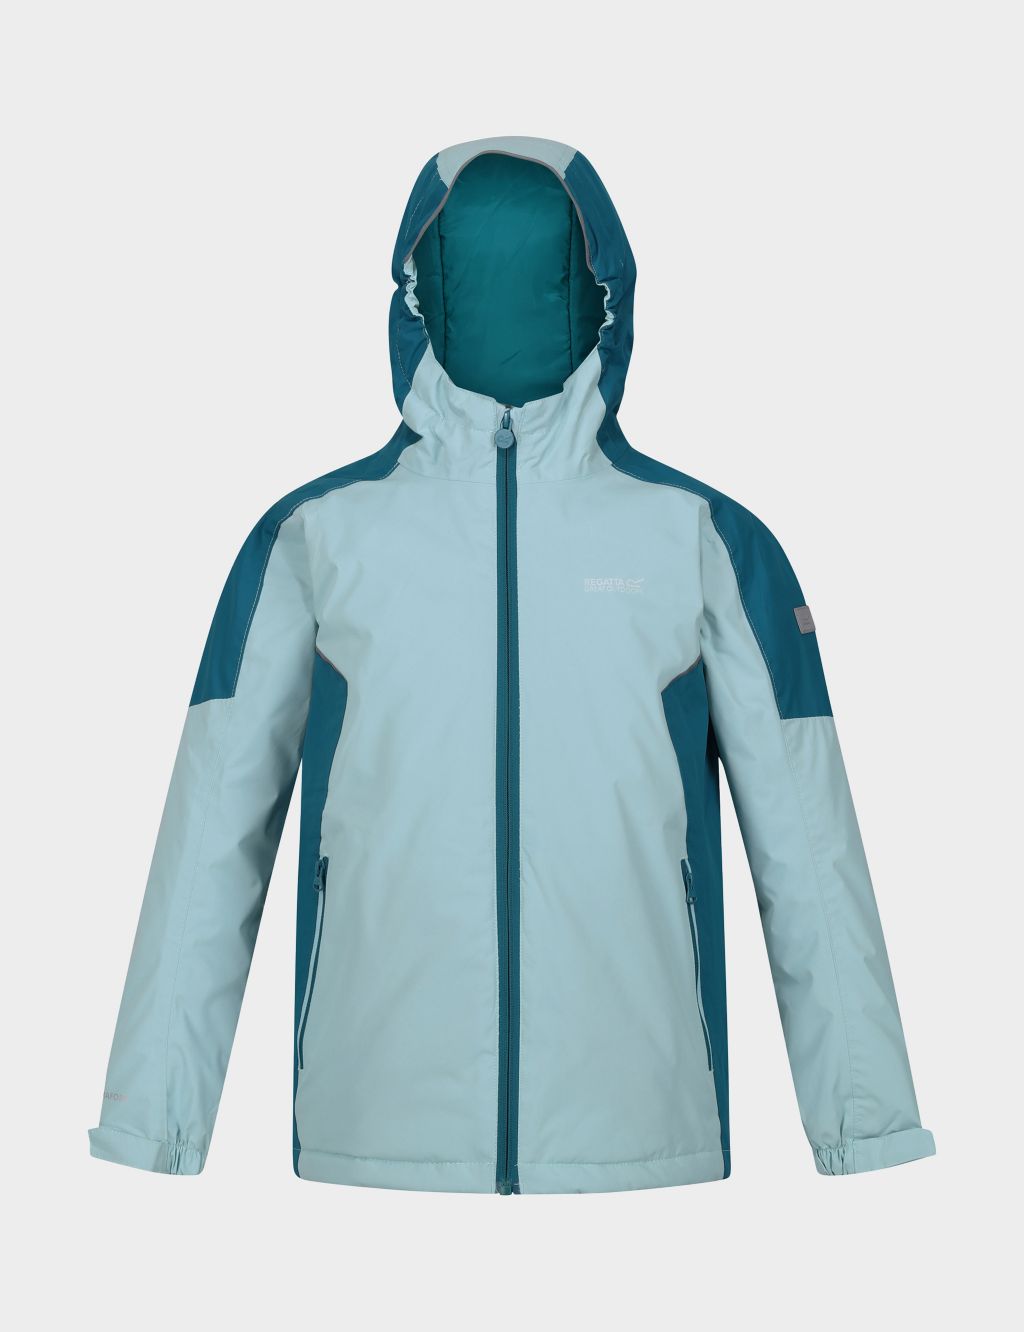 Hurdle IV Waterproof Hooded Jacket (3-14 Yrs) image 2